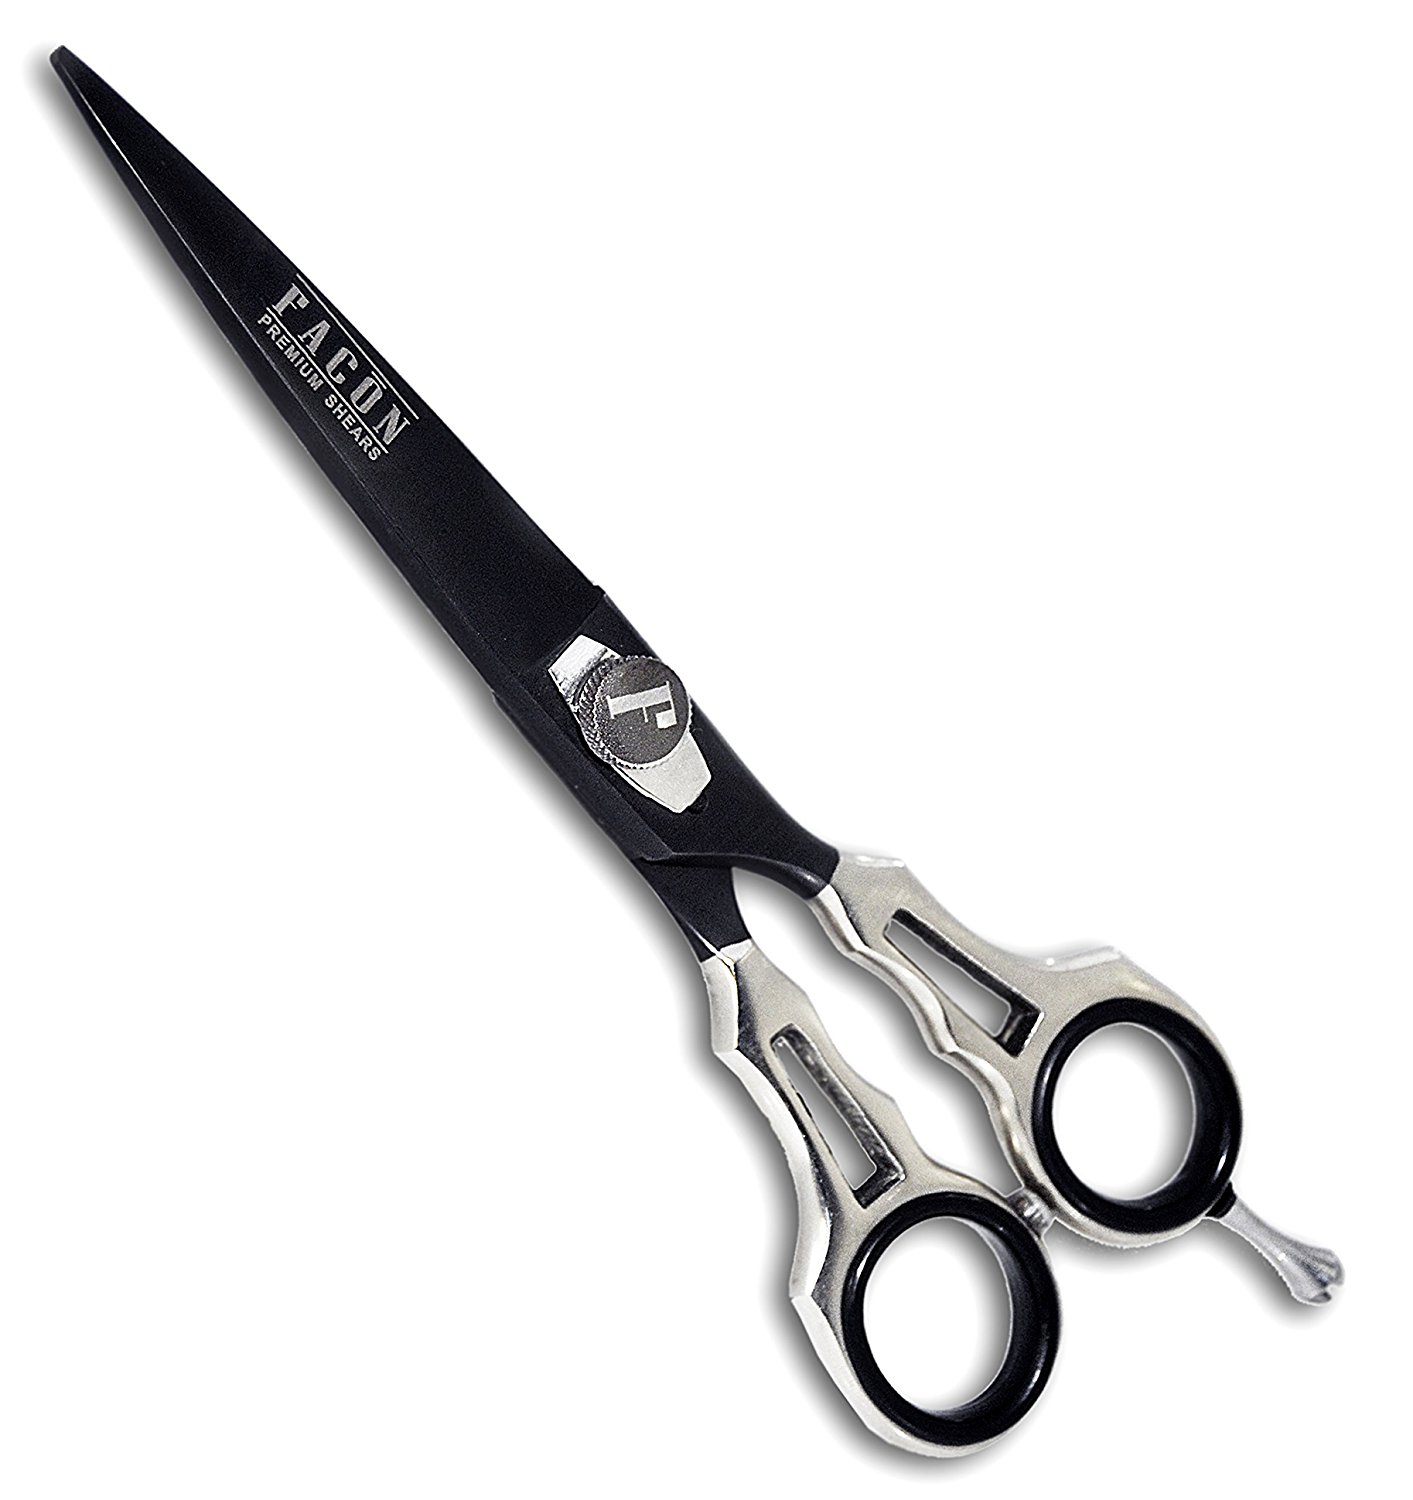 Amazon.com : #1 Shears - Facon Professional Razor Edge Salon Barber ...